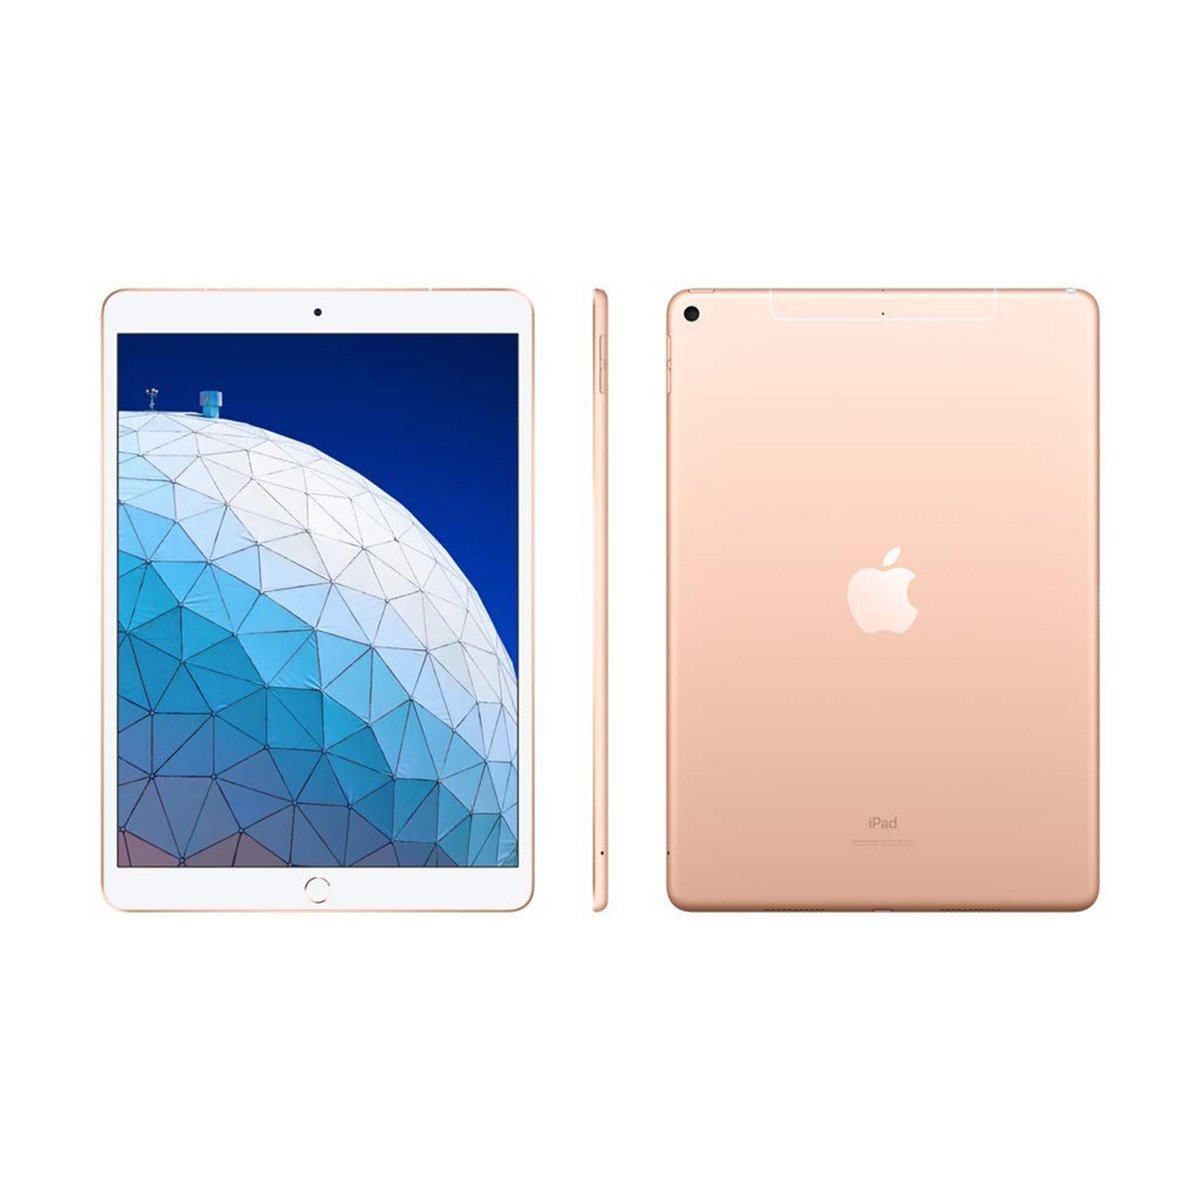 Apple iPad Air (2019) - iOS (Wi-Fi + Cellular, 256GB)10.5inch Gold